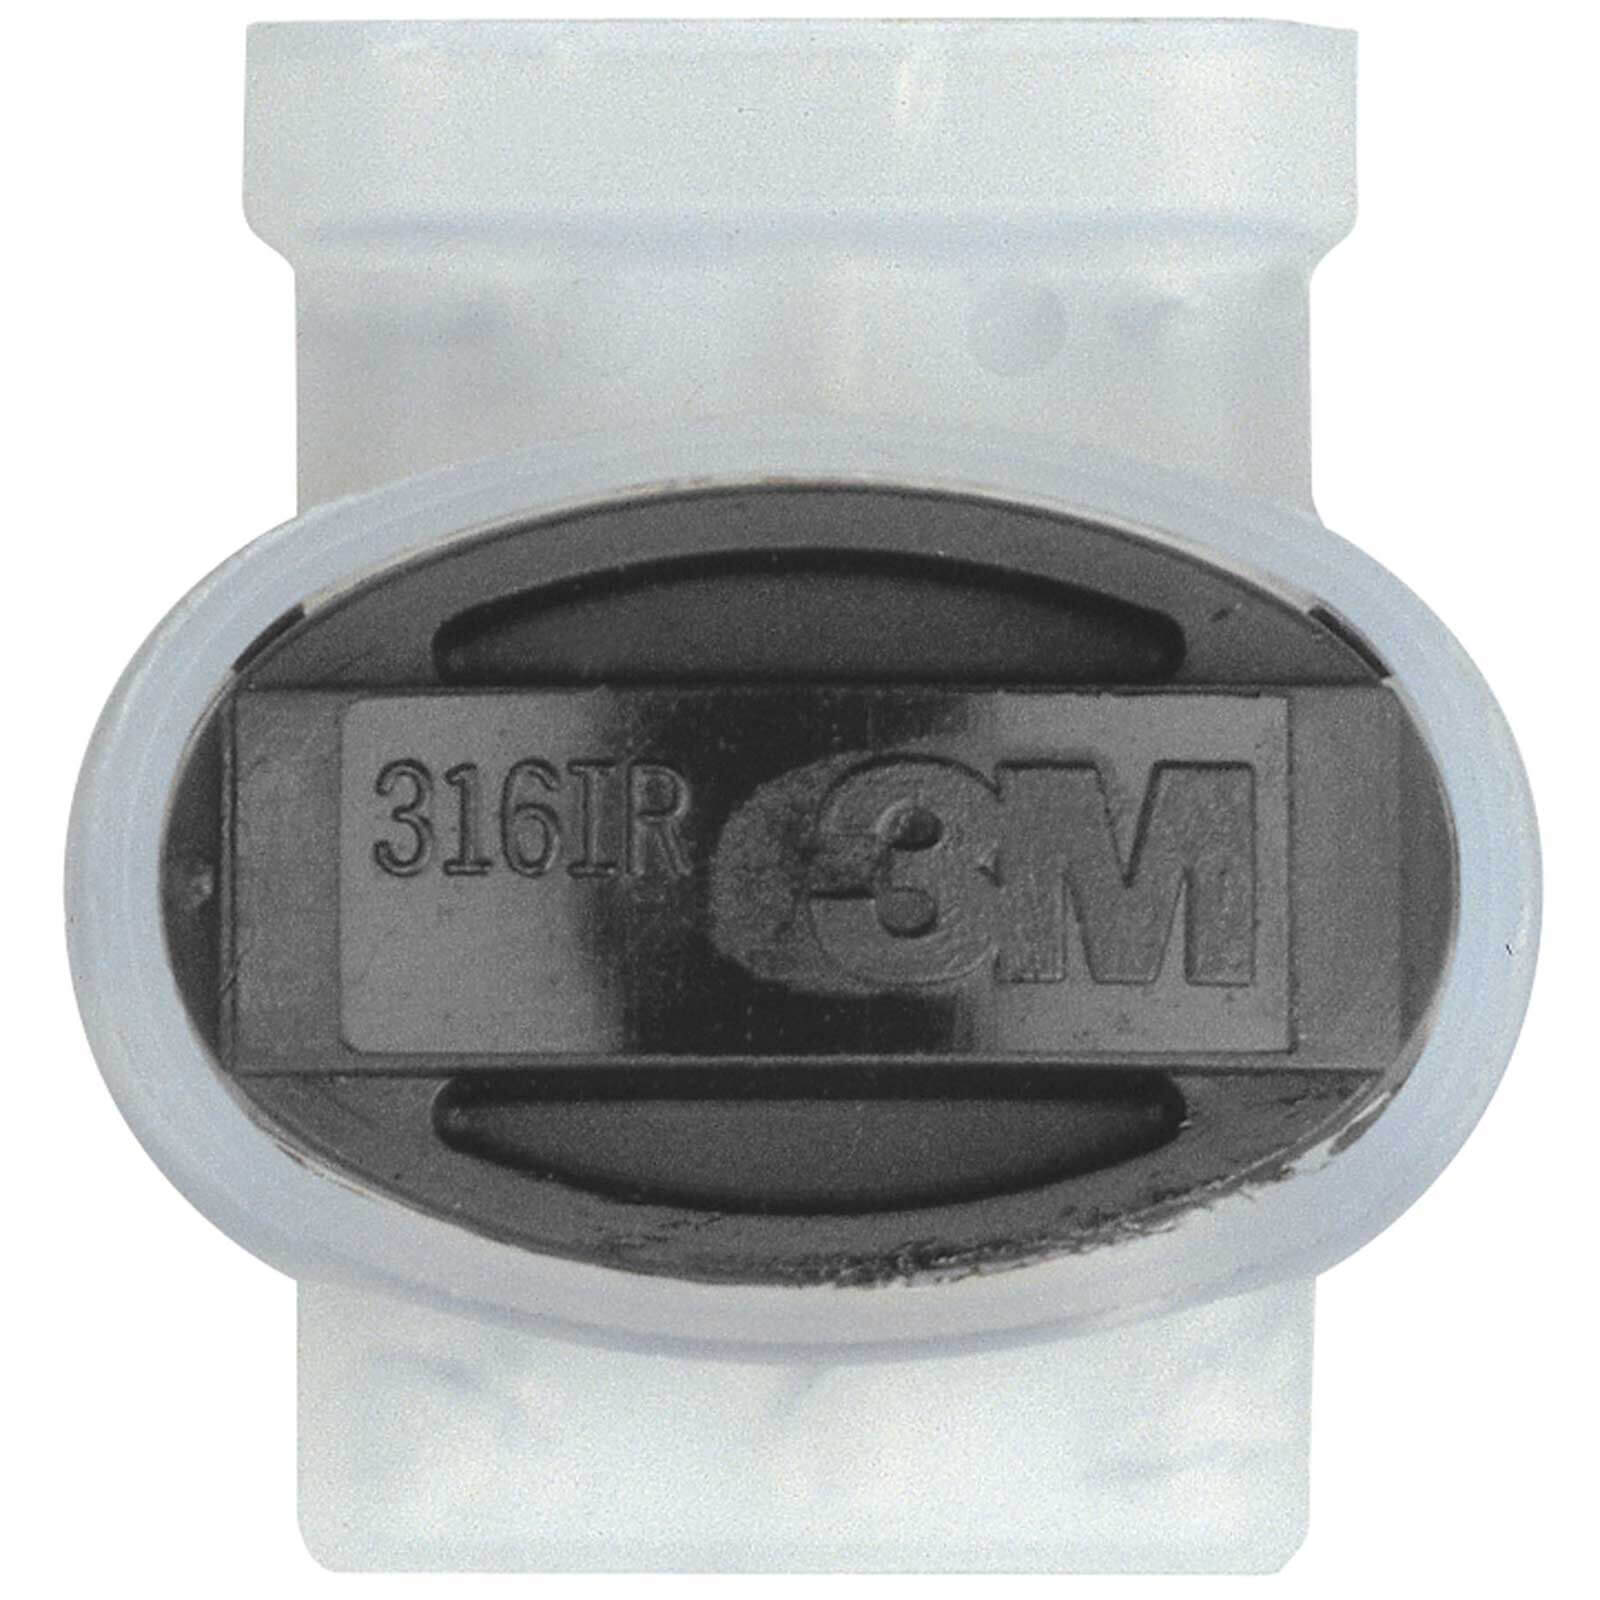 Image of Gardena SPRINKLERSYSTEM 24V Connect Cable Clip